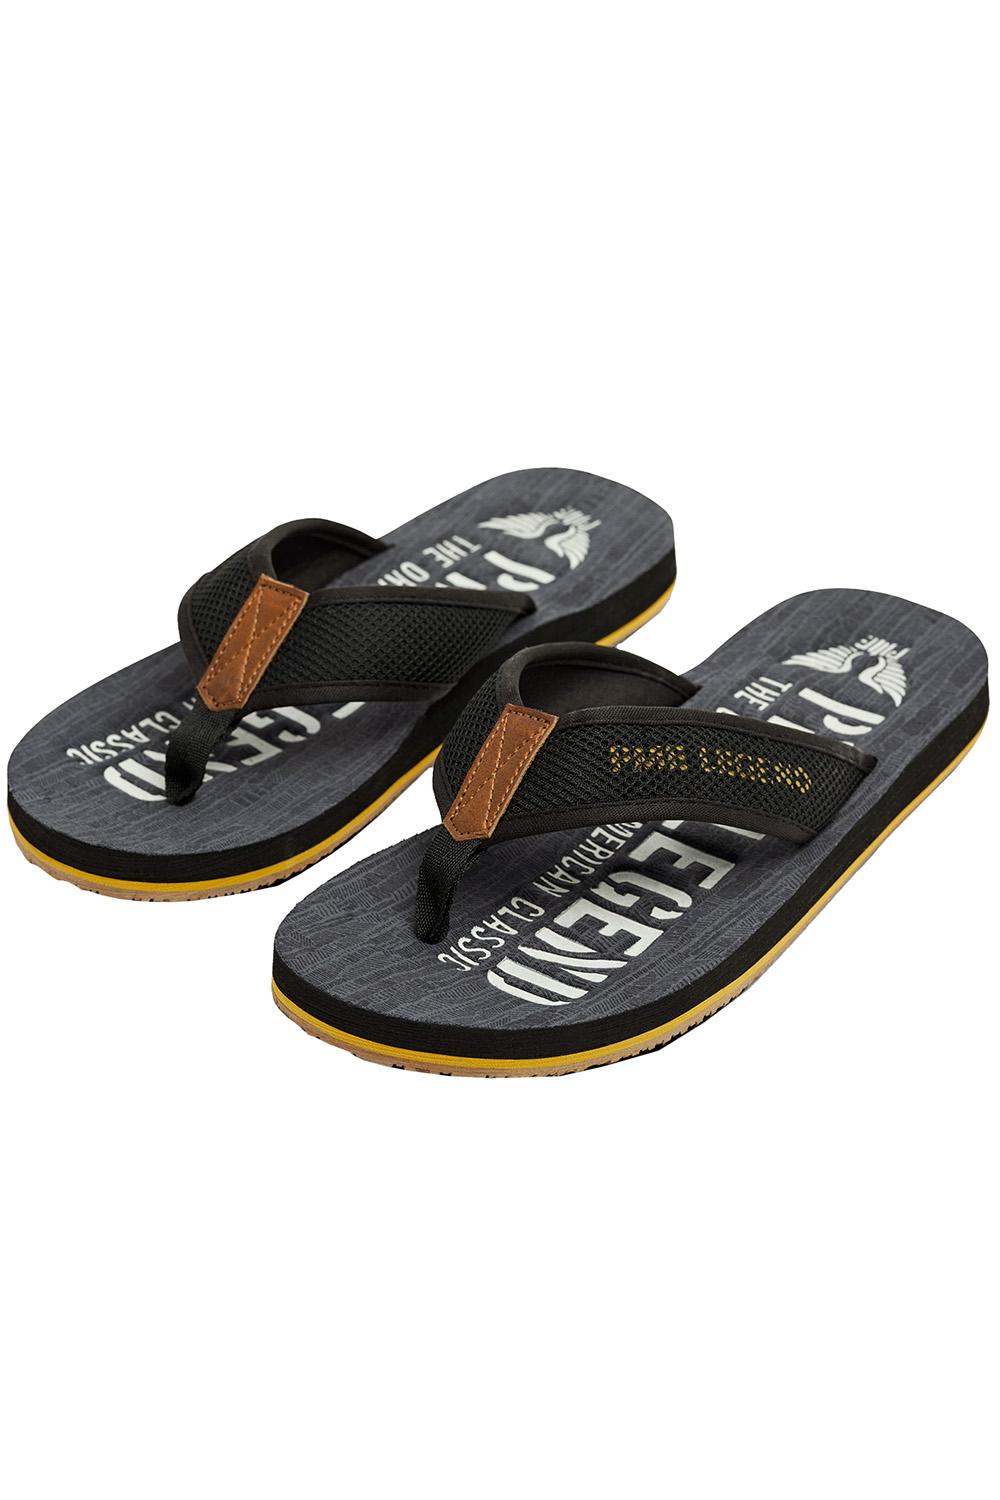 sandals pbo2304180 pme slipper 962